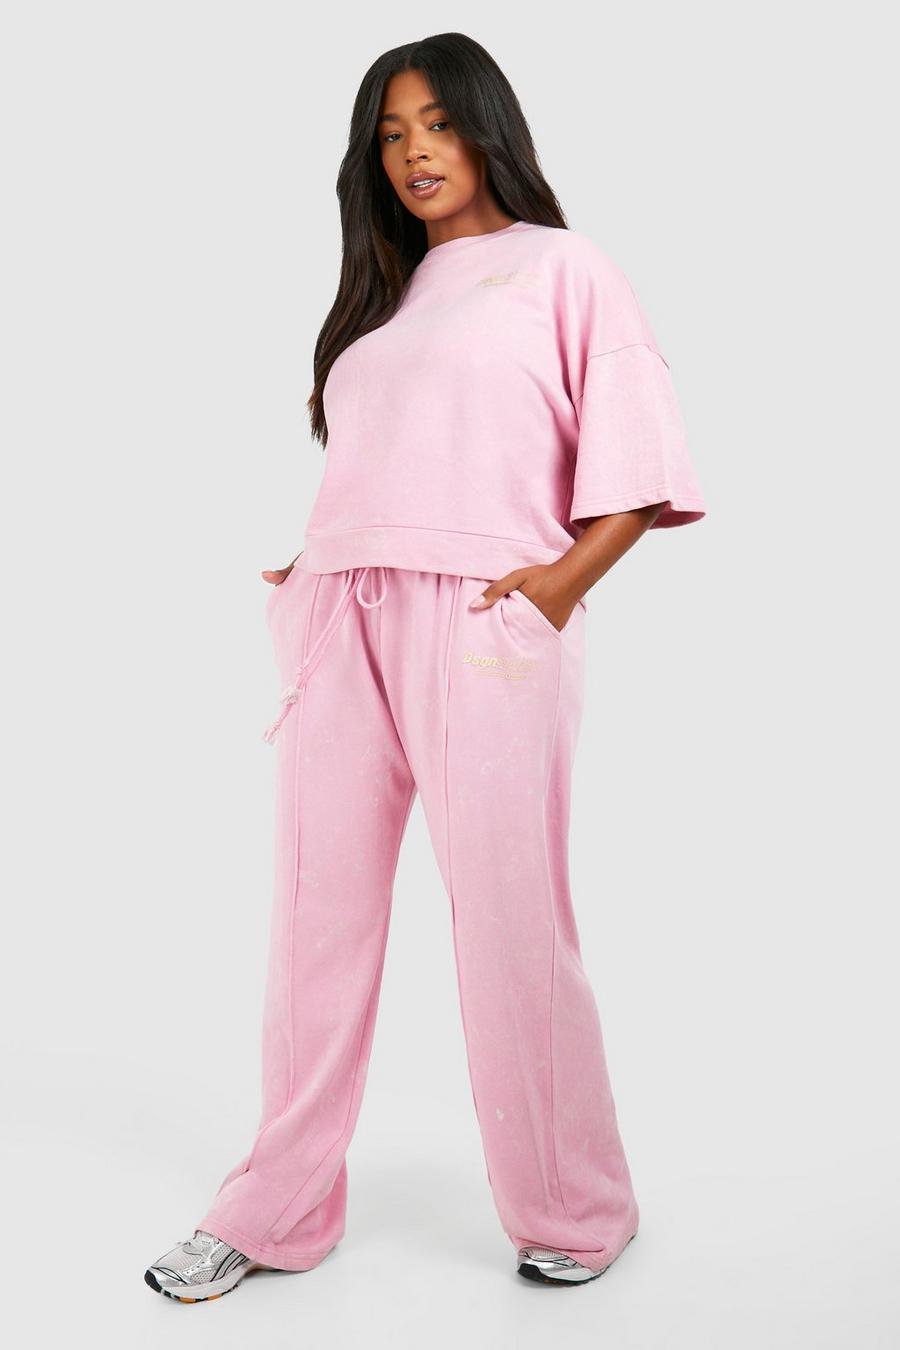 Pantaloni tuta Plus Size dritti slavati Dsgn Studio, Pink image number 1